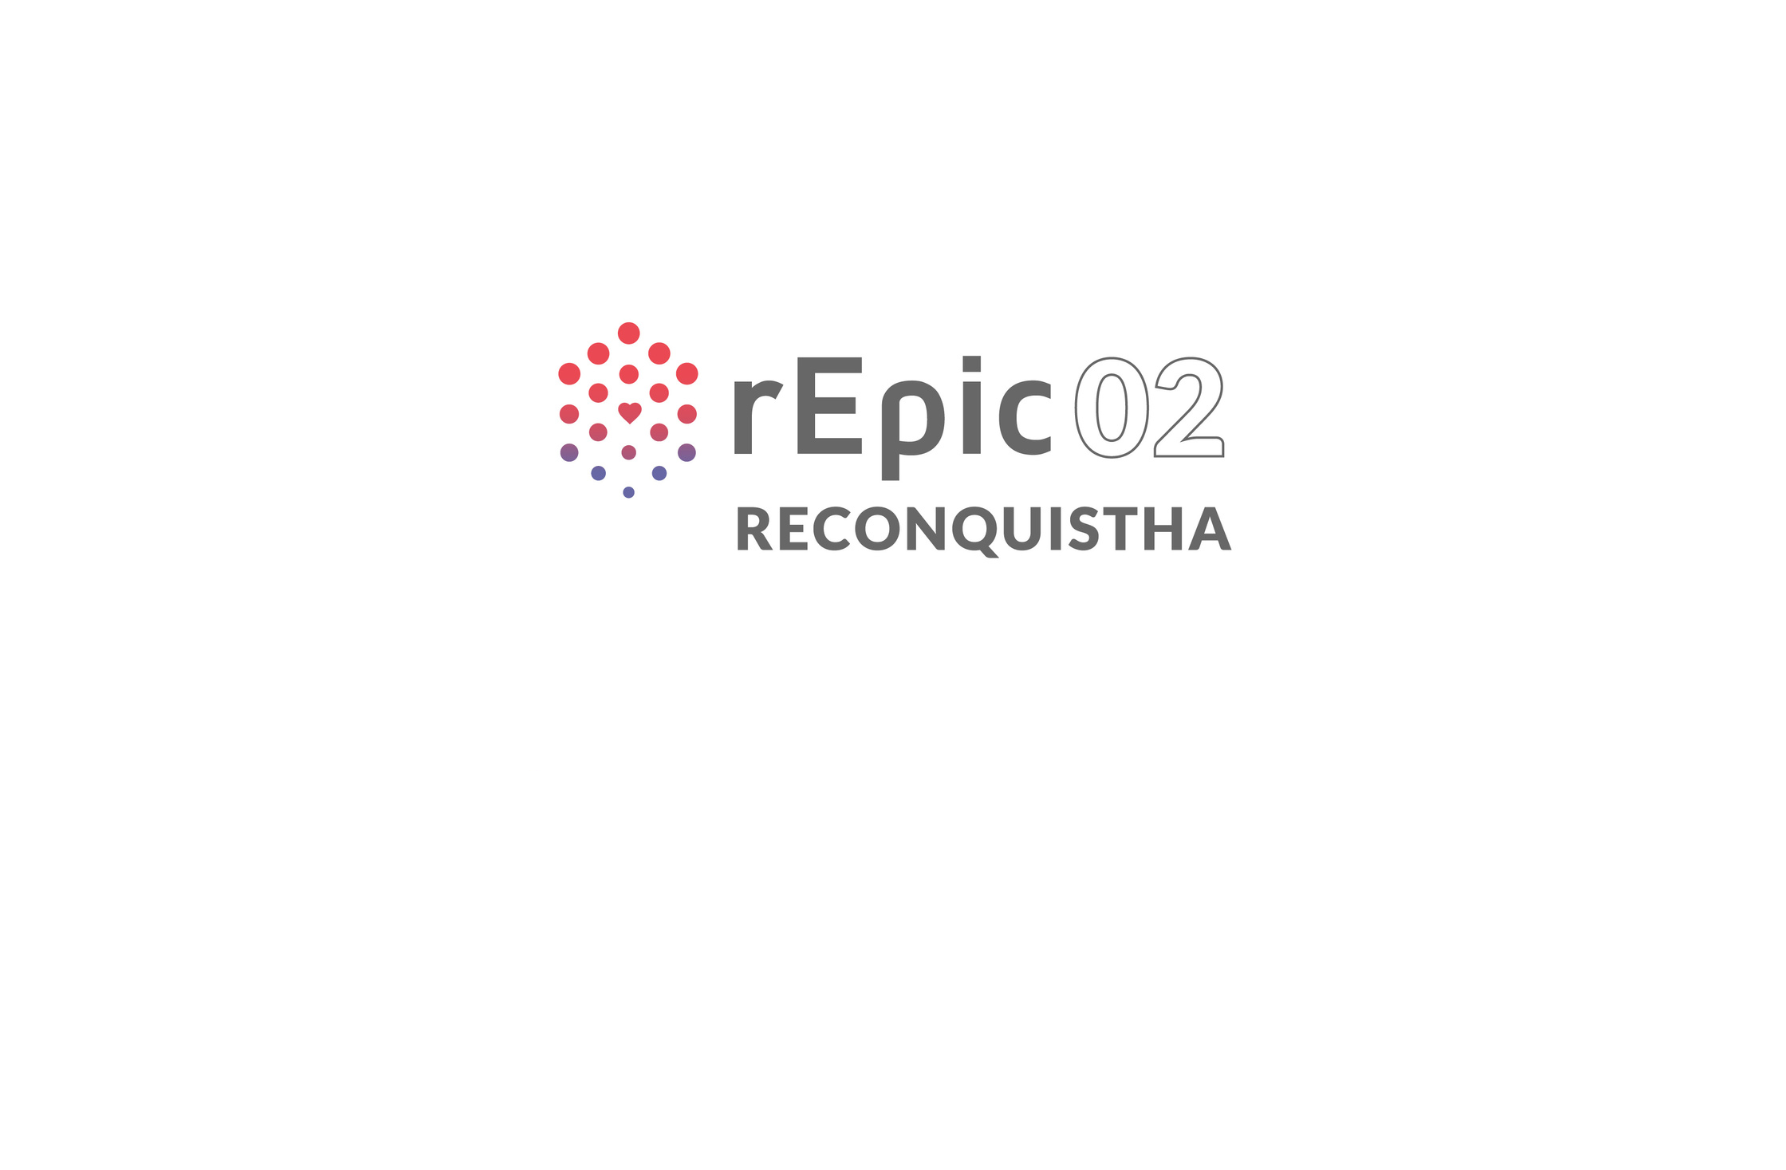 RECONQUISTHA rEPIC02